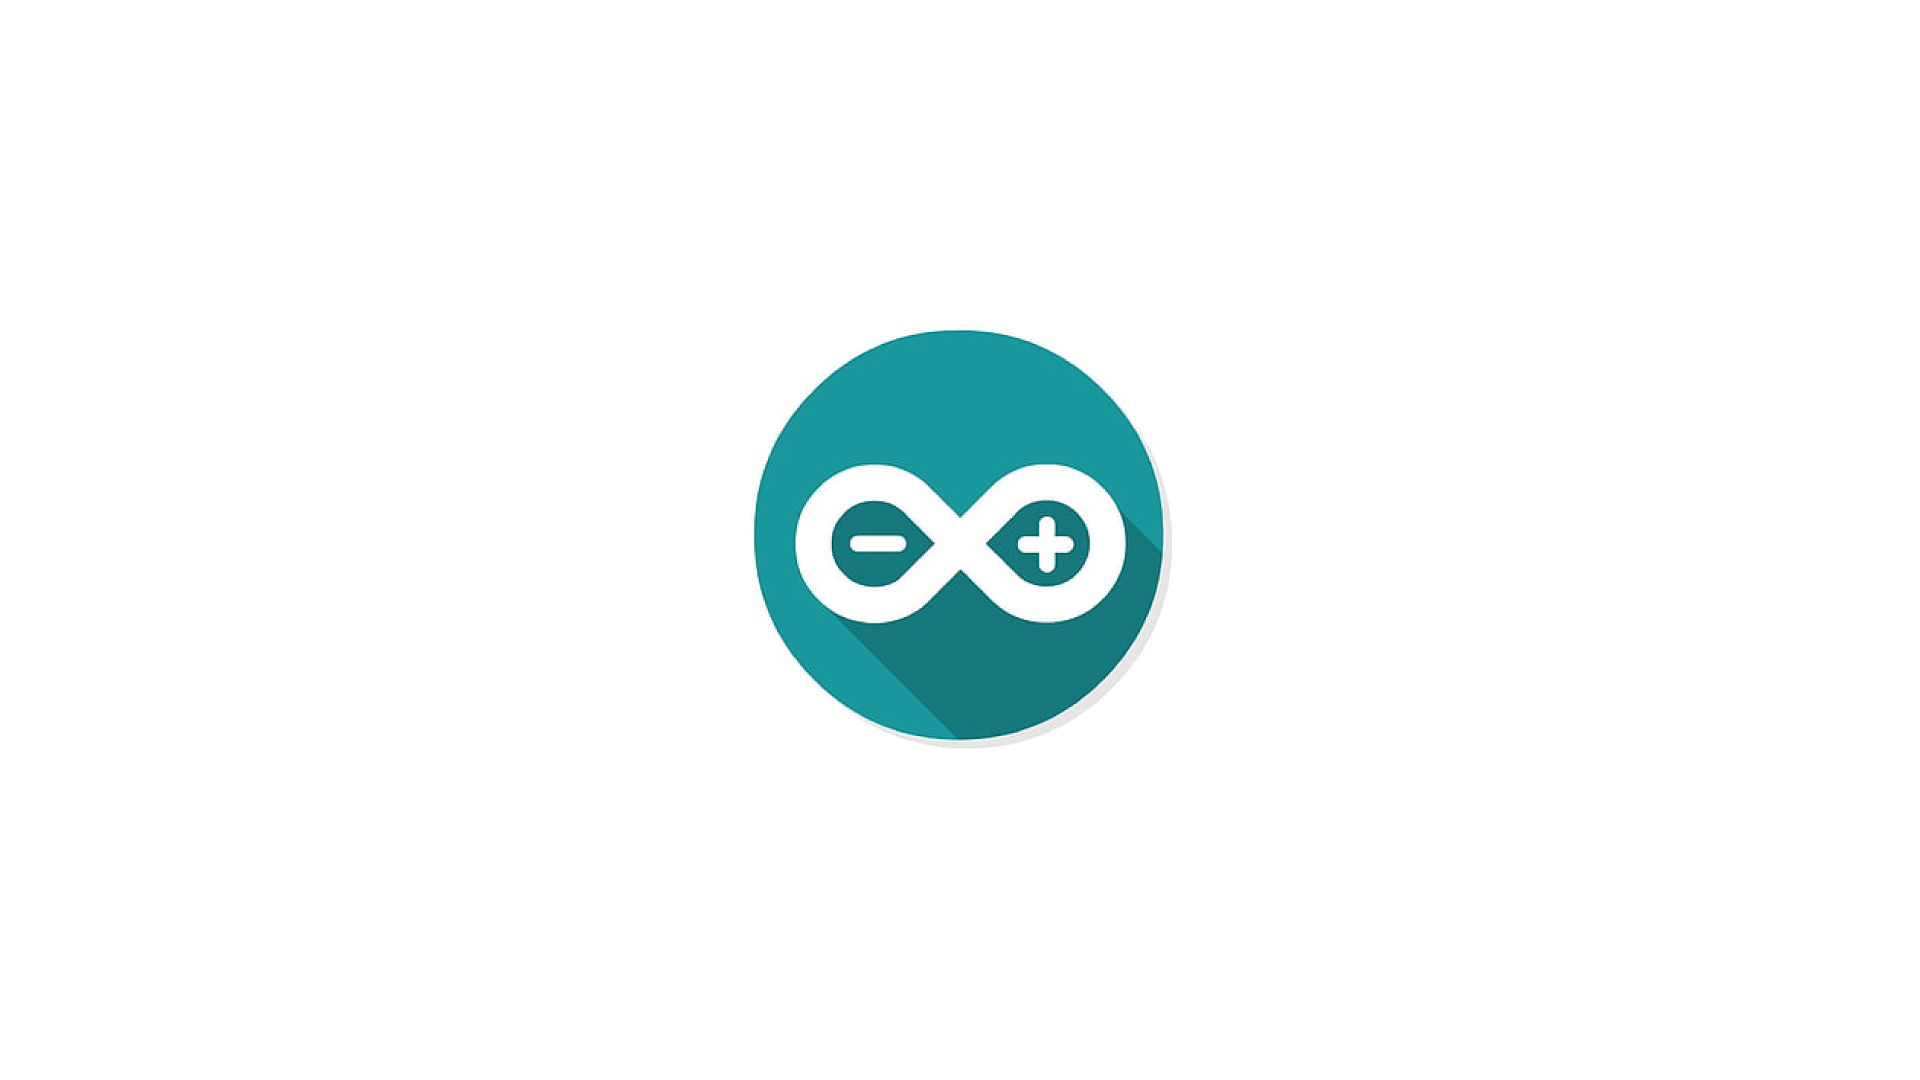 Arduinoのロゴ